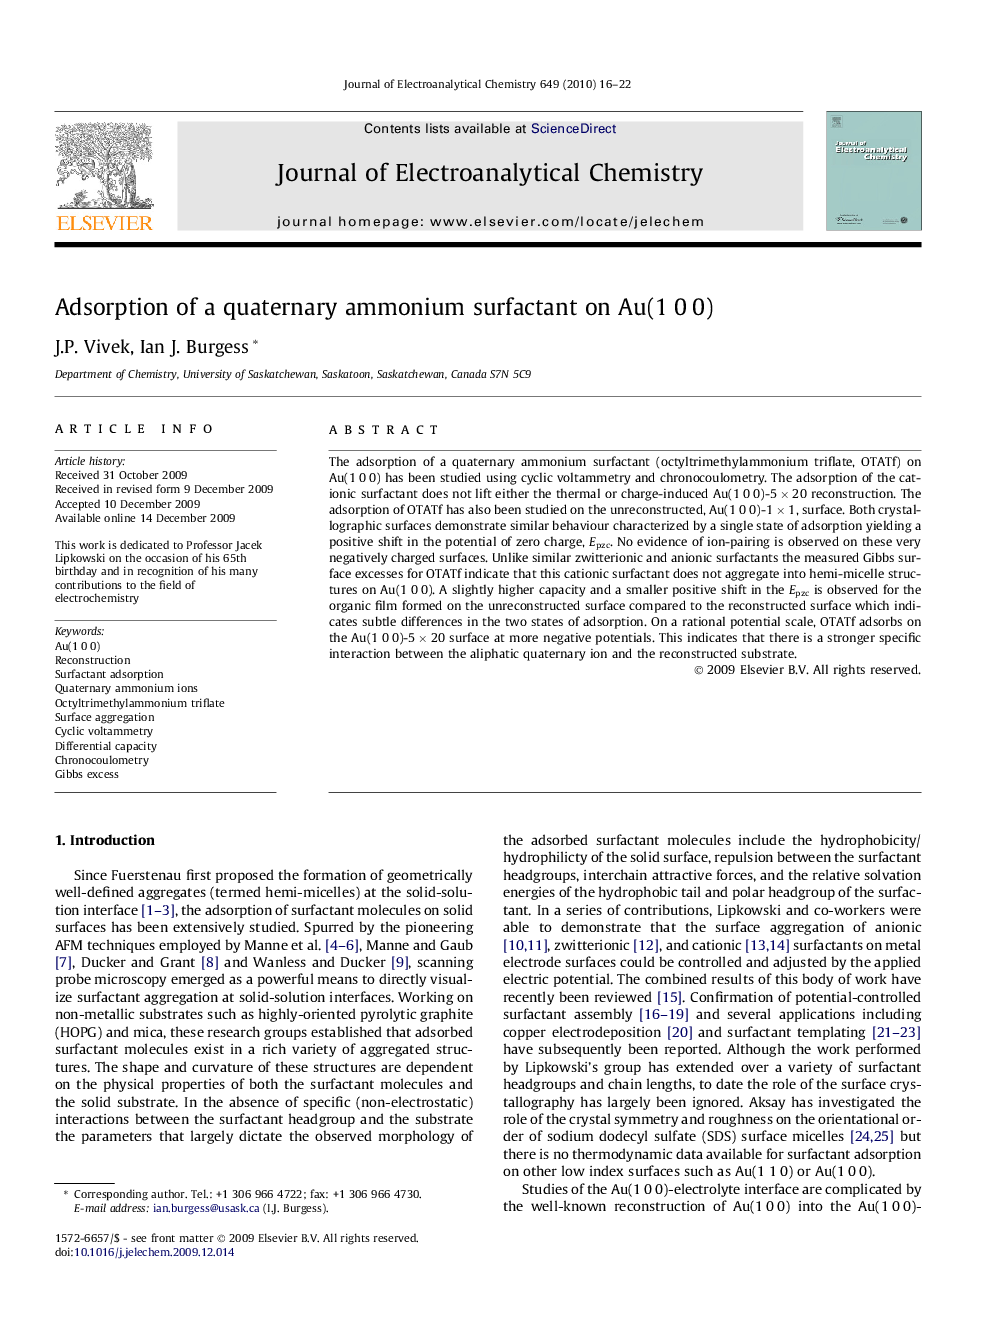 Adsorption of a quaternary ammonium surfactant on Au(1 0 0)